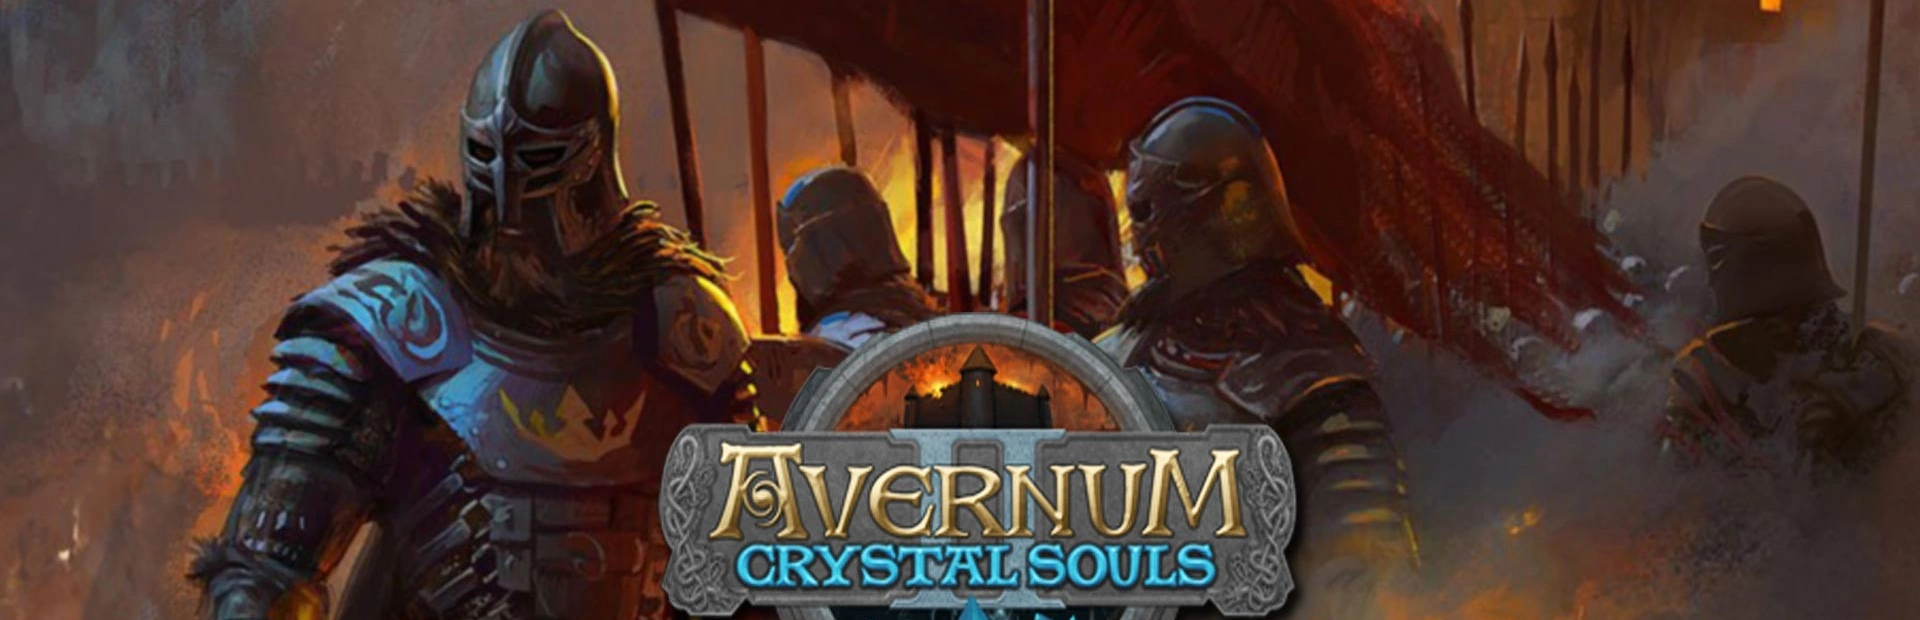 دانلود بازی Avernum 2 Crystal Souls برای کامپیوتر | گیمباتو